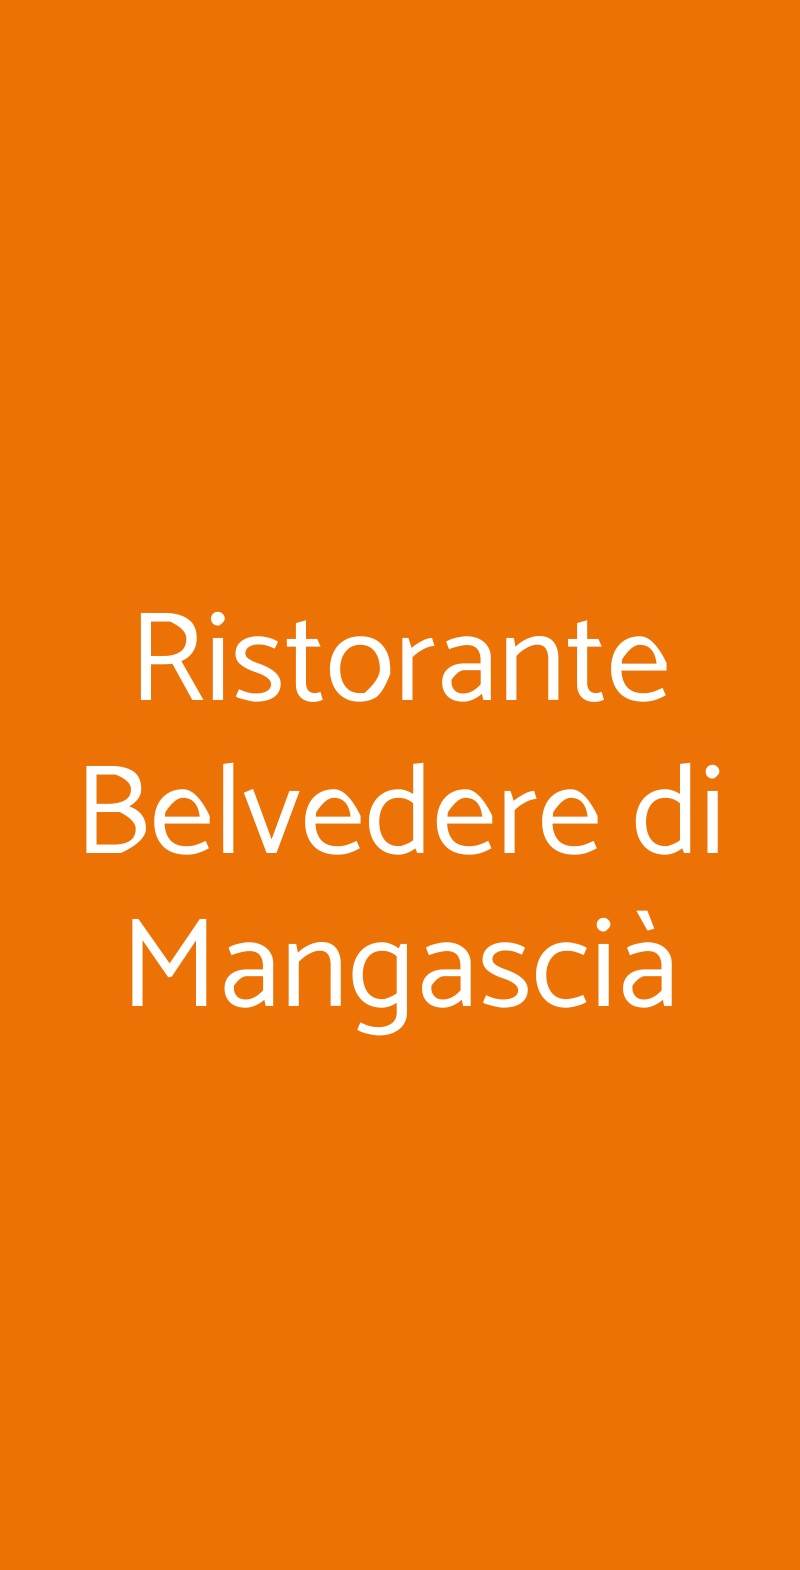 Ristorante Belvedere di Mangascià Anguillara Sabazia menù 1 pagina